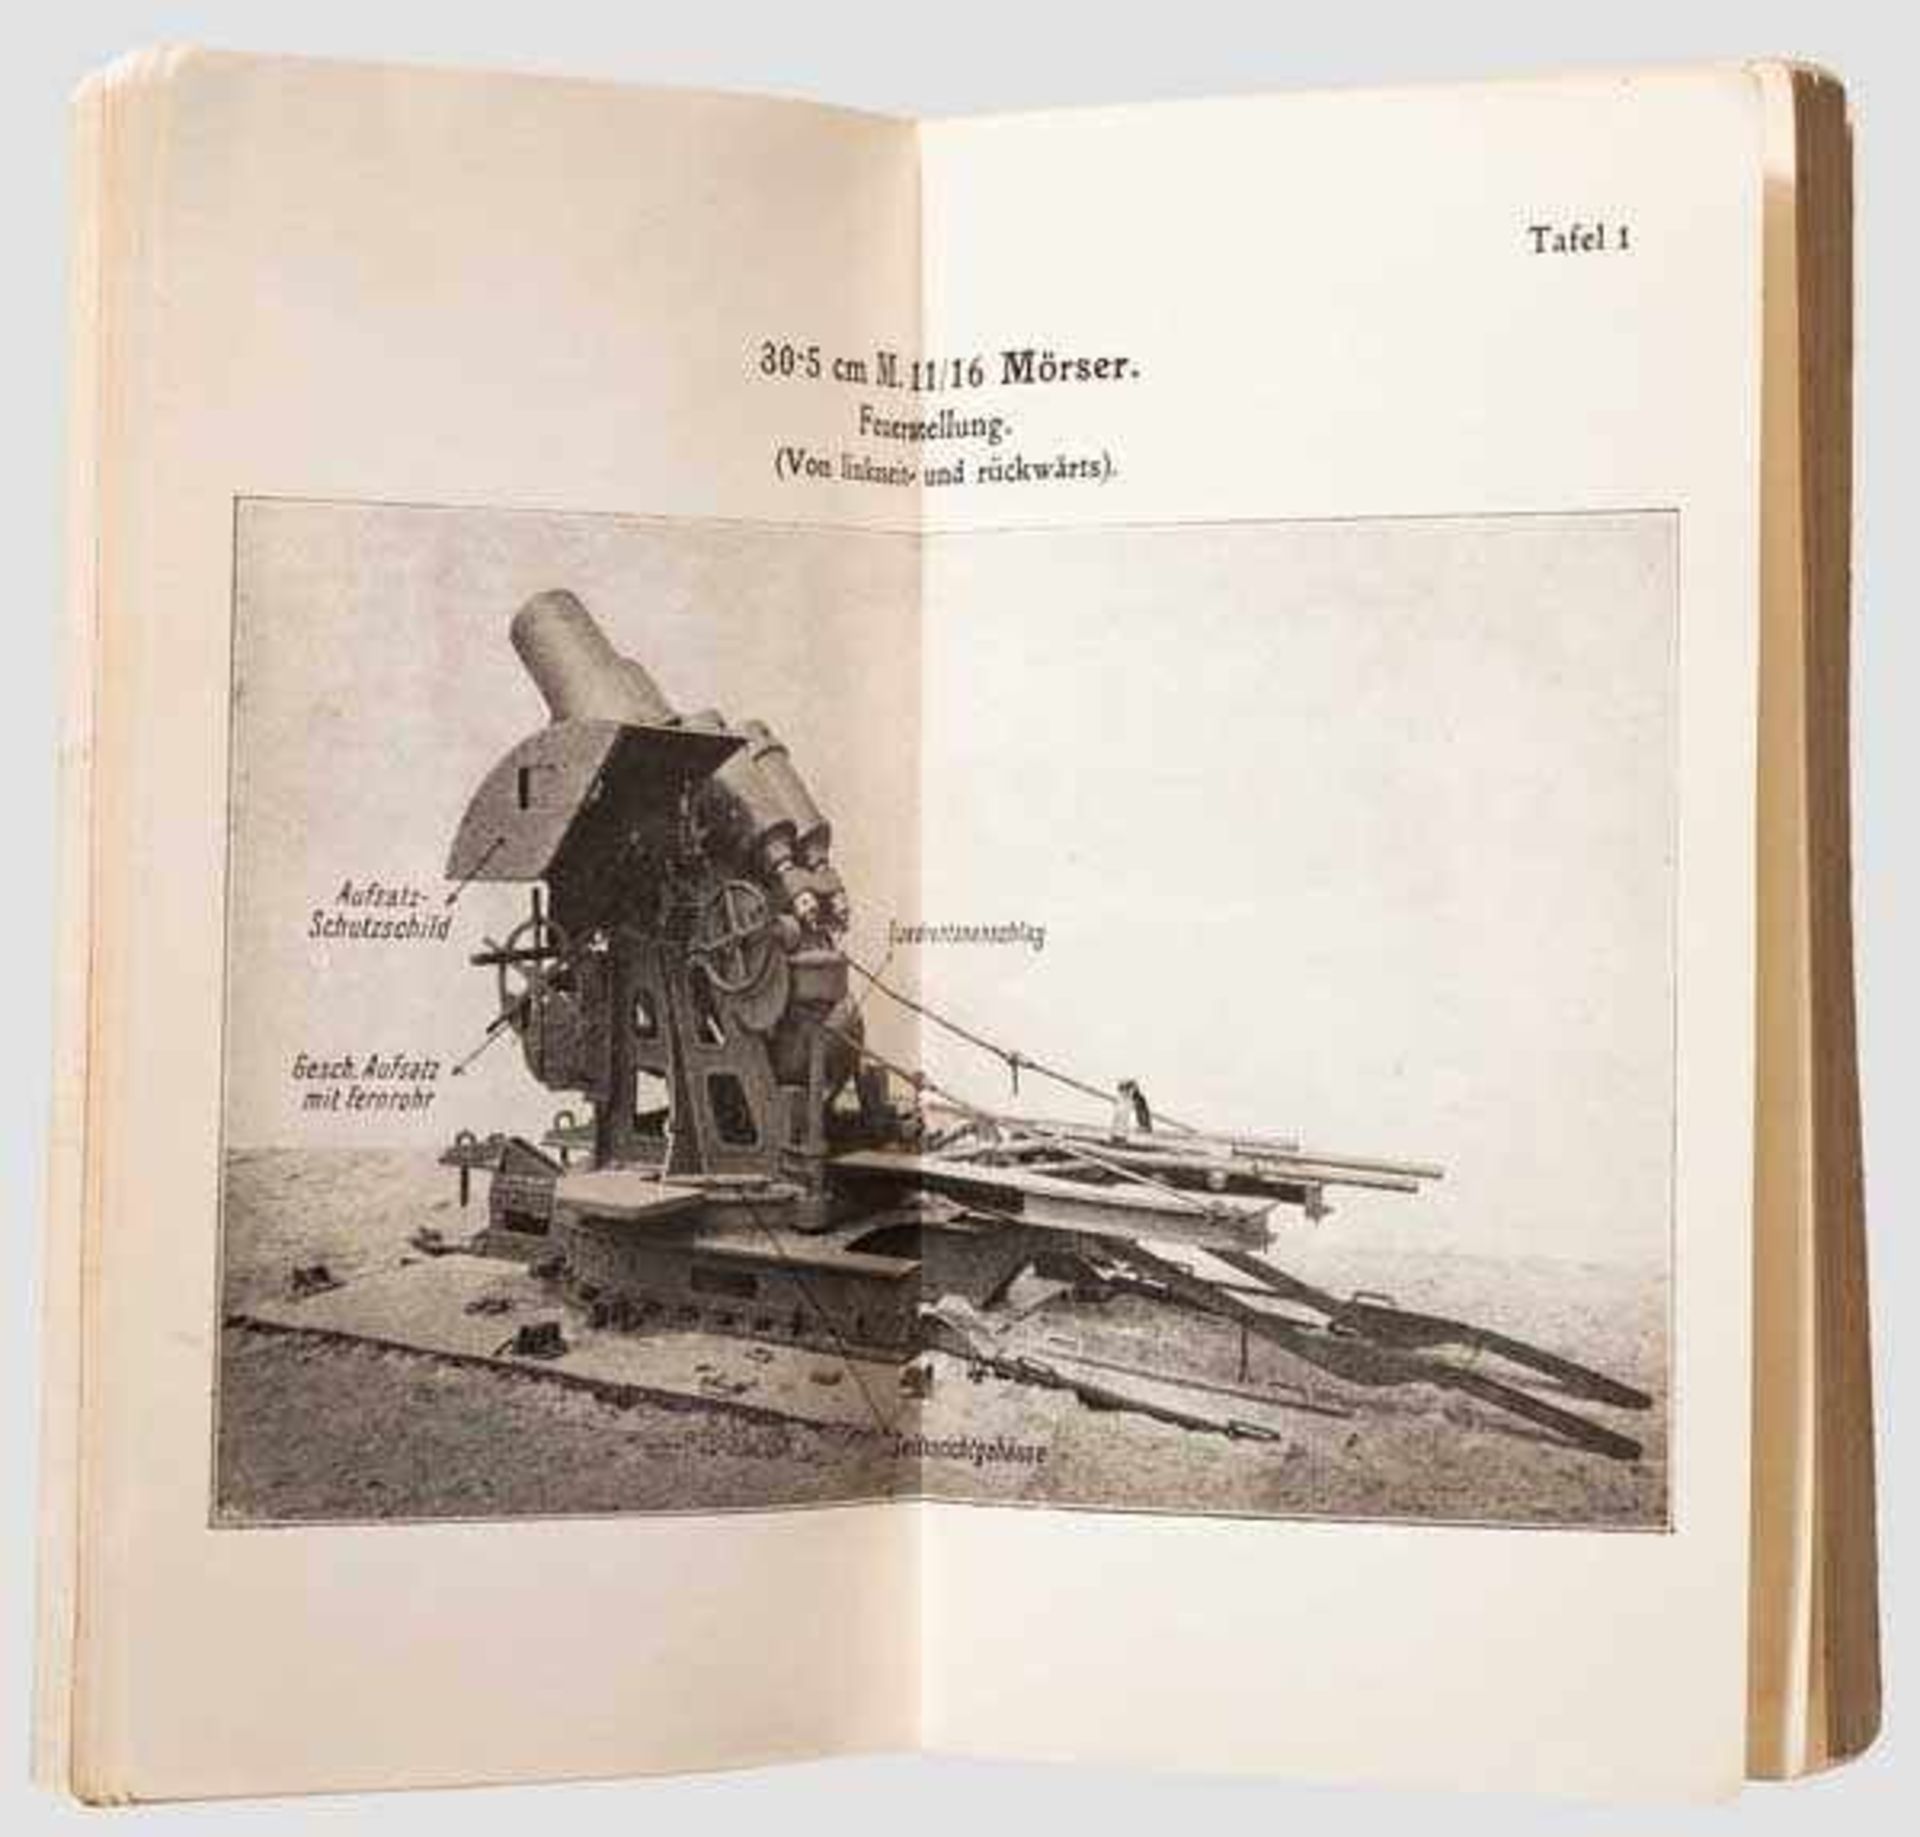 Tafelheft zum Artillerieunterricht - Mörser M 11/16 30,5 cm Dienstvorschrift, Wien 1916, K & K - Bild 2 aus 2